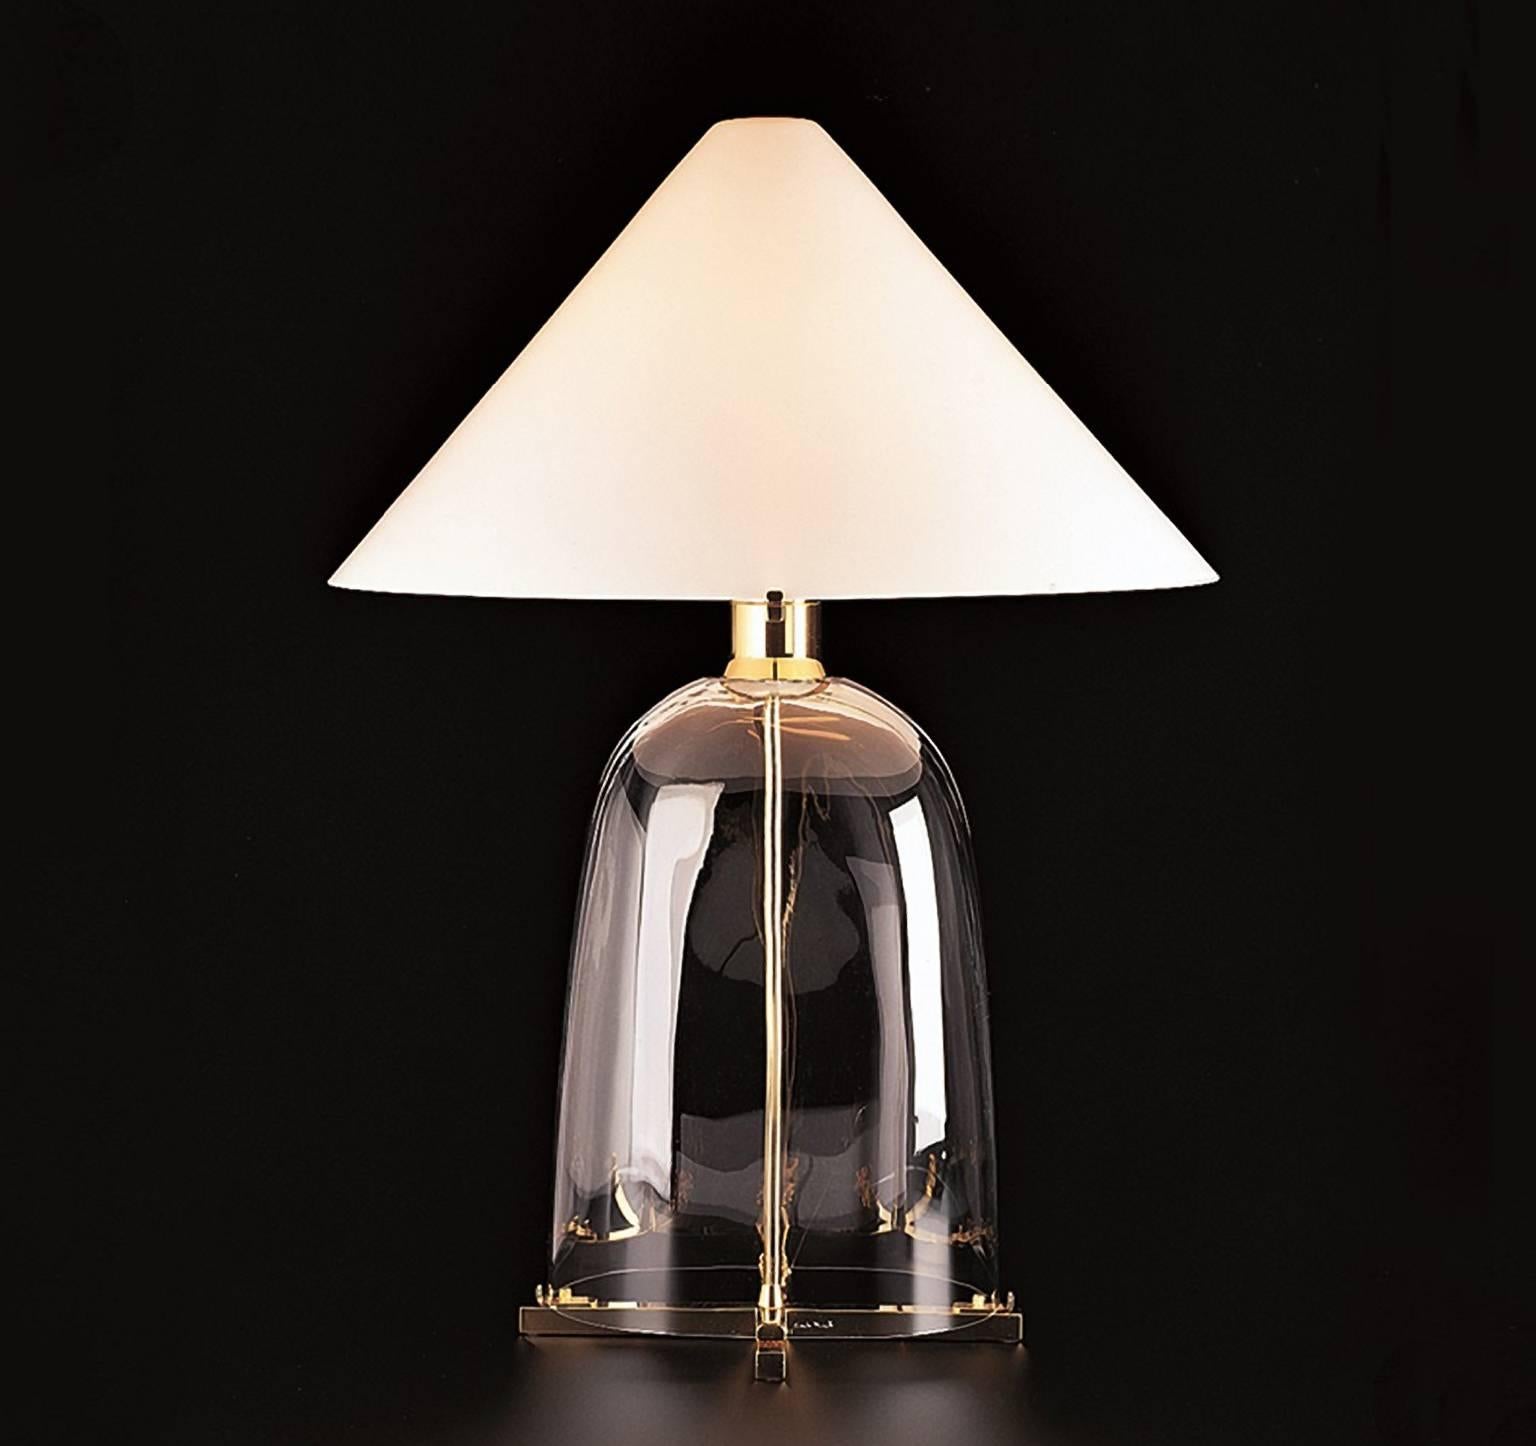 Ovale ist eine Tischleuchte aus klarem, mundgeblasenem Muranoglas und einem Schirm aus weißem, mundgeblasenem Opalglas auf vergoldetem Metall, die von Architectural Digest zu einer der besten neuen Leuchten 2015 gewählt wurde. Die Leuchte wurde 1983